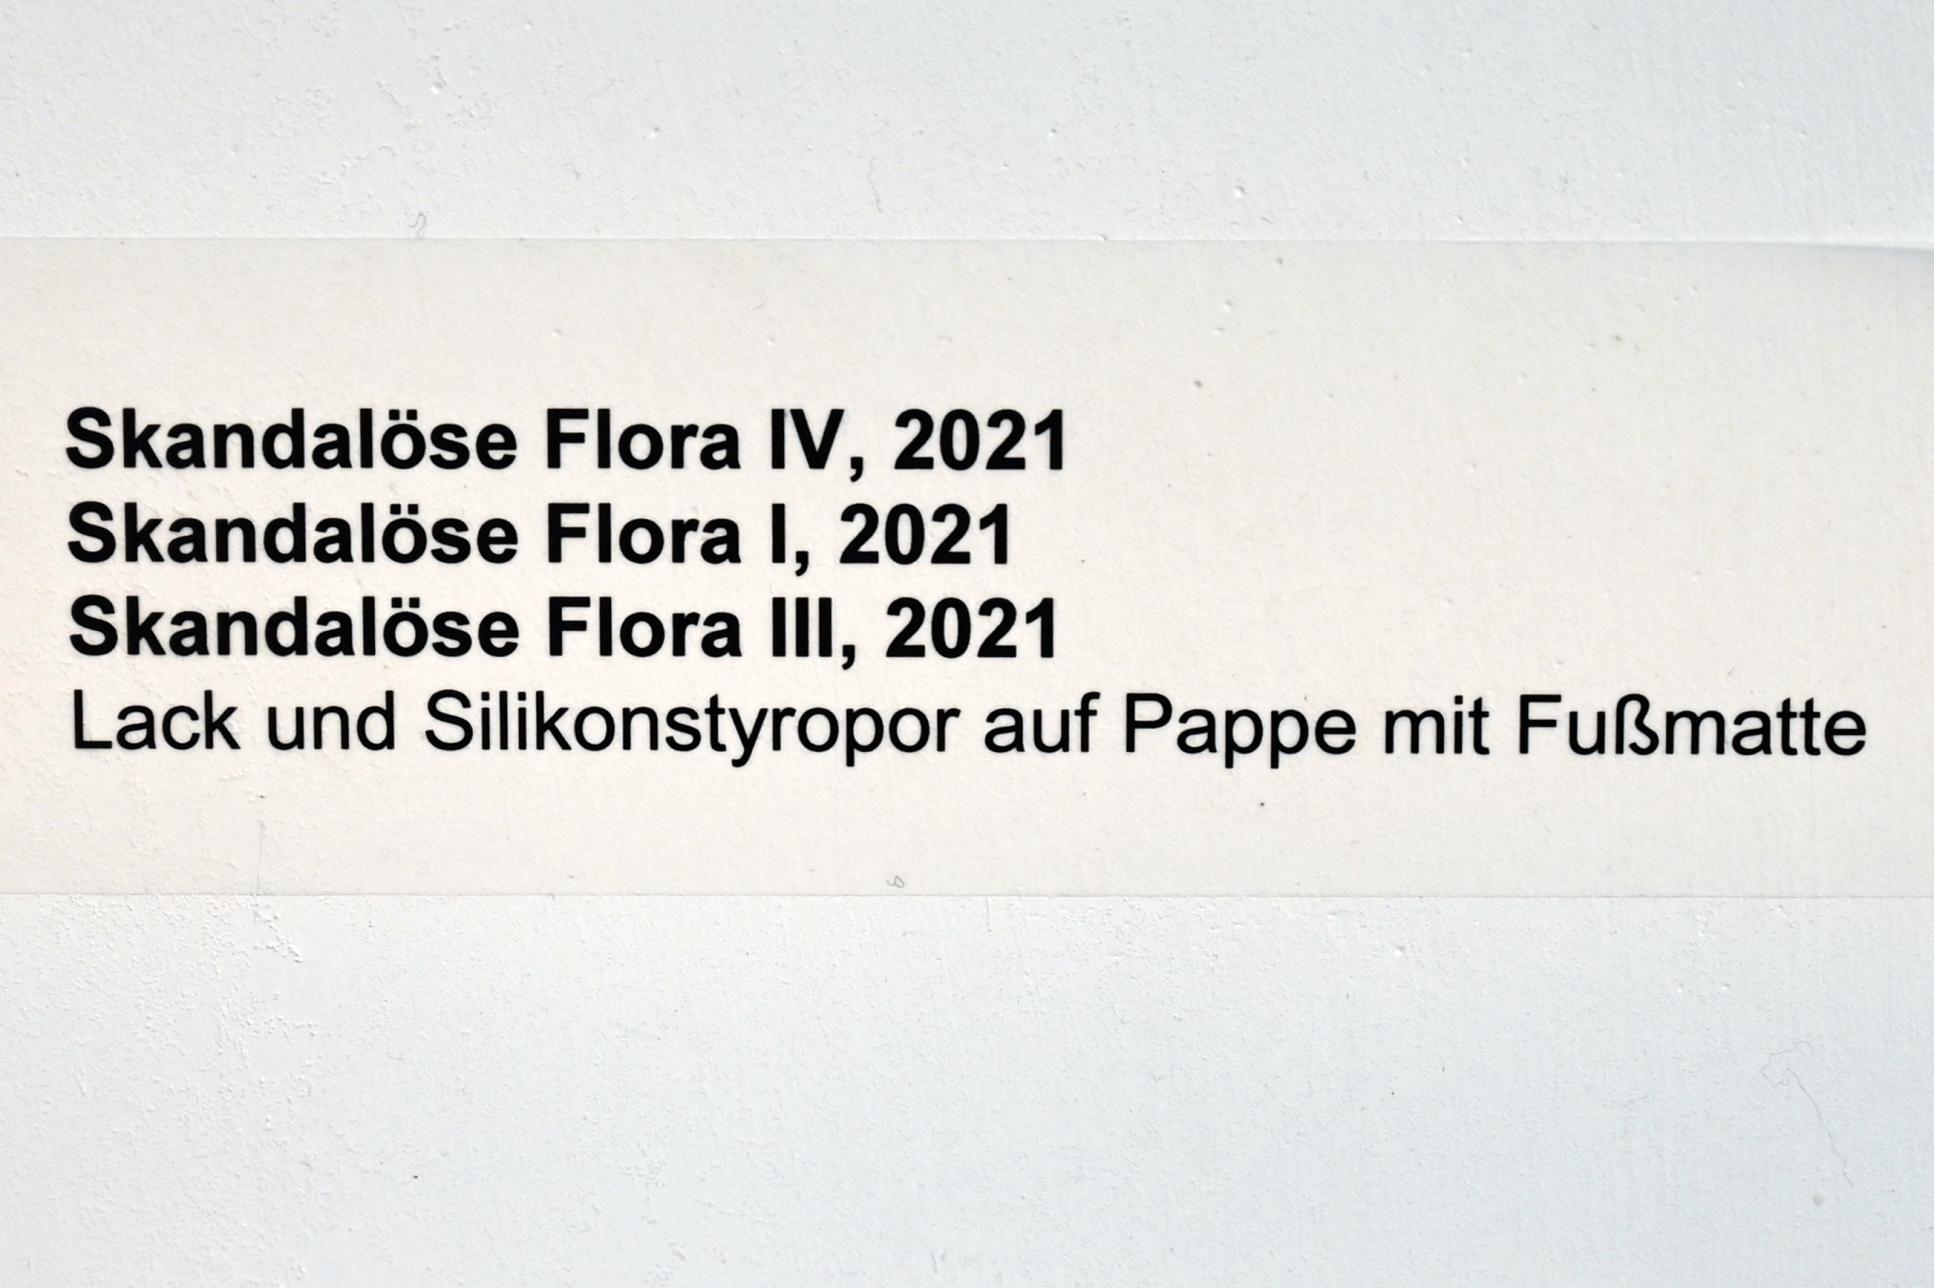 Verena Issel (2021–2022), Skandalöse Flora IV, Neumarkt in der Oberpfalz, Museum Lothar Fischer, Ausstellung "VERENA ISSEL" vom 26.06.-09.10.2022, Raum 4, 2021, Bild 2/2